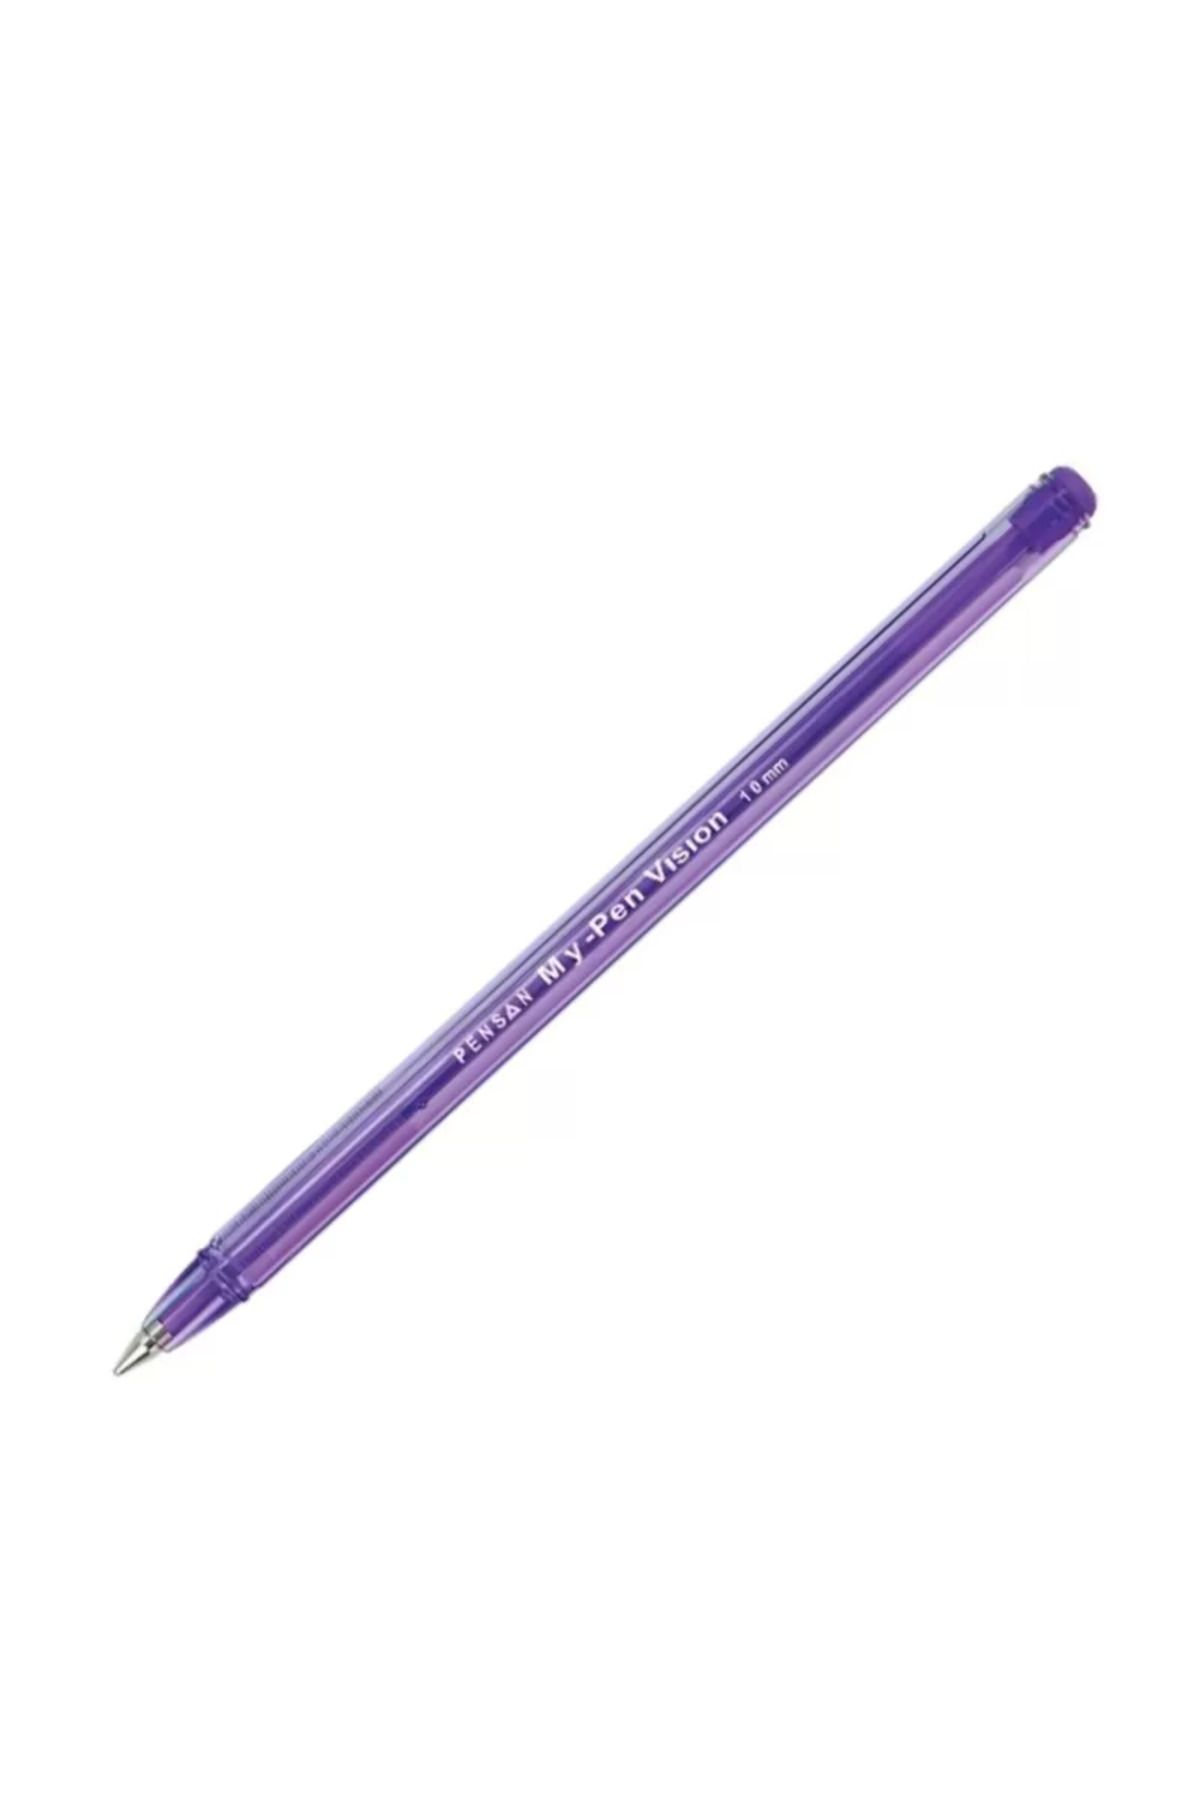 Pensan 2211 My-pen Tükenmez Kalem 1.0 Violet